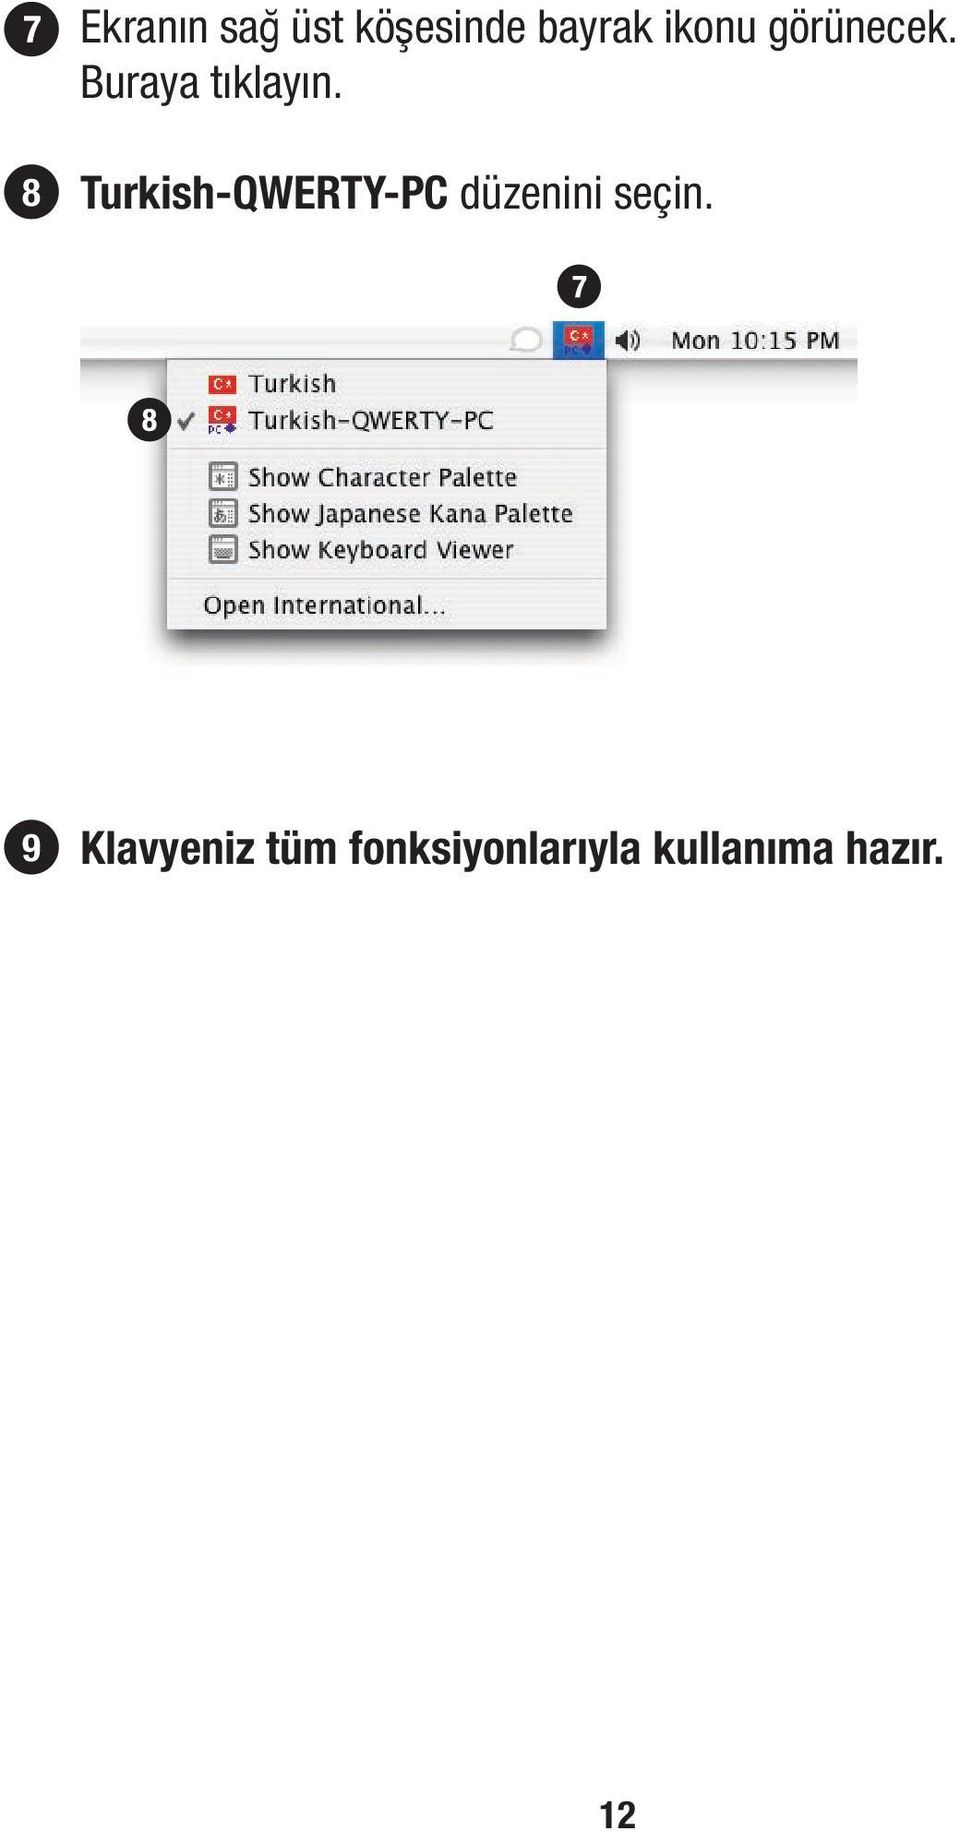 Turkish-QWERTY-PC düzenini seçin.